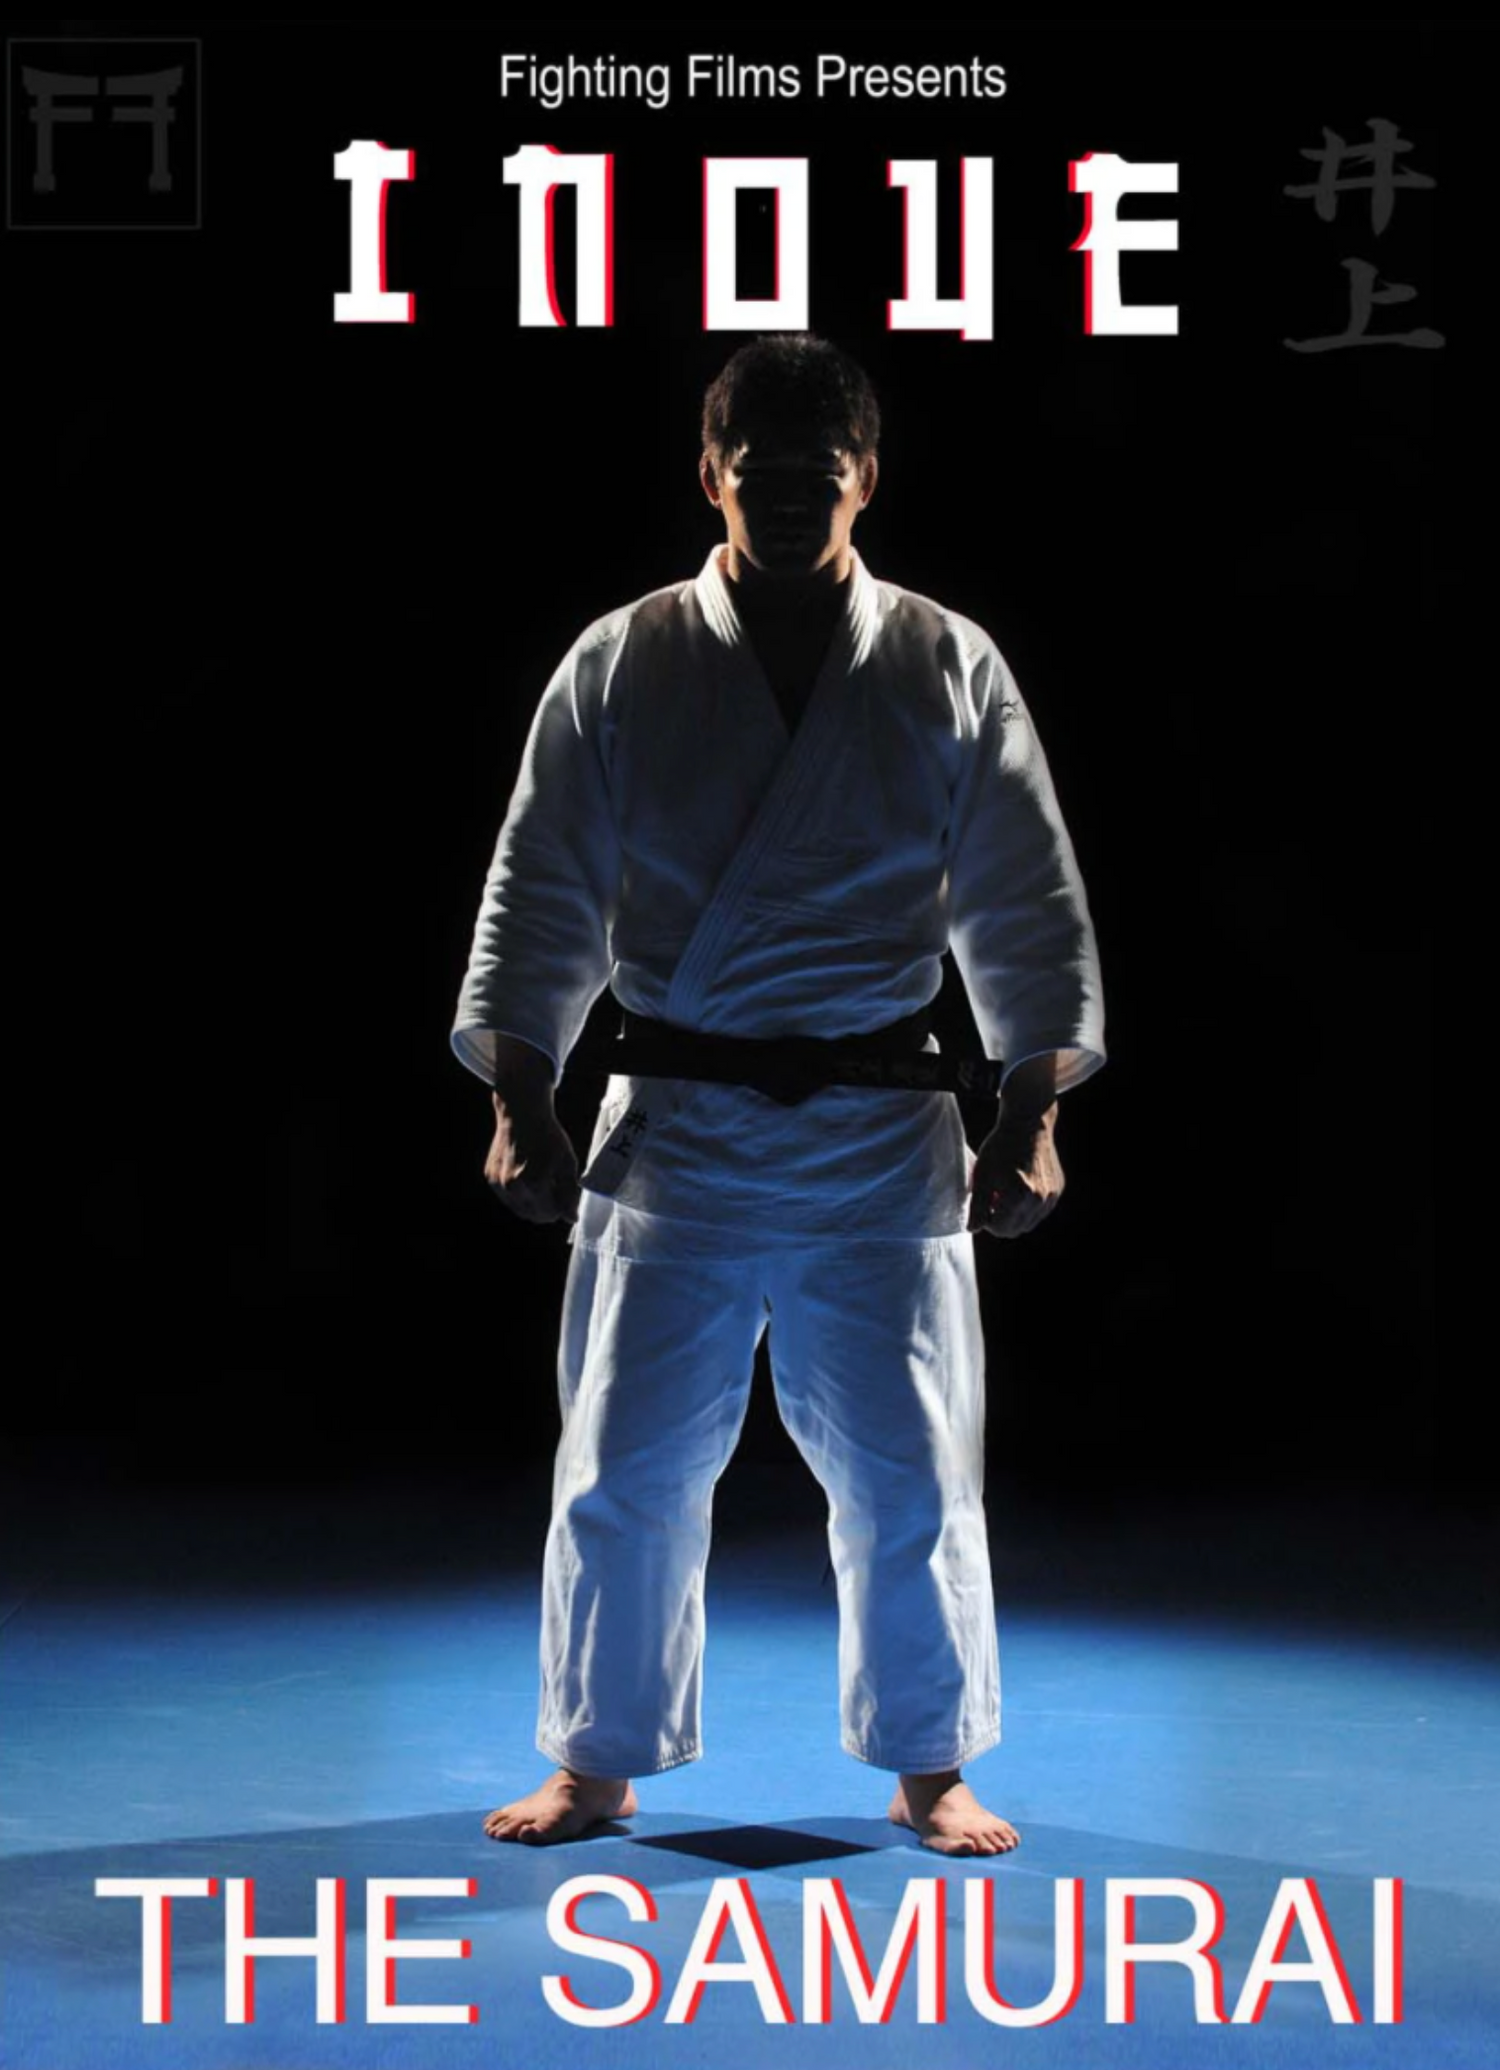 The Samurai DVD by Kosei Inoue - Budovideos Inc